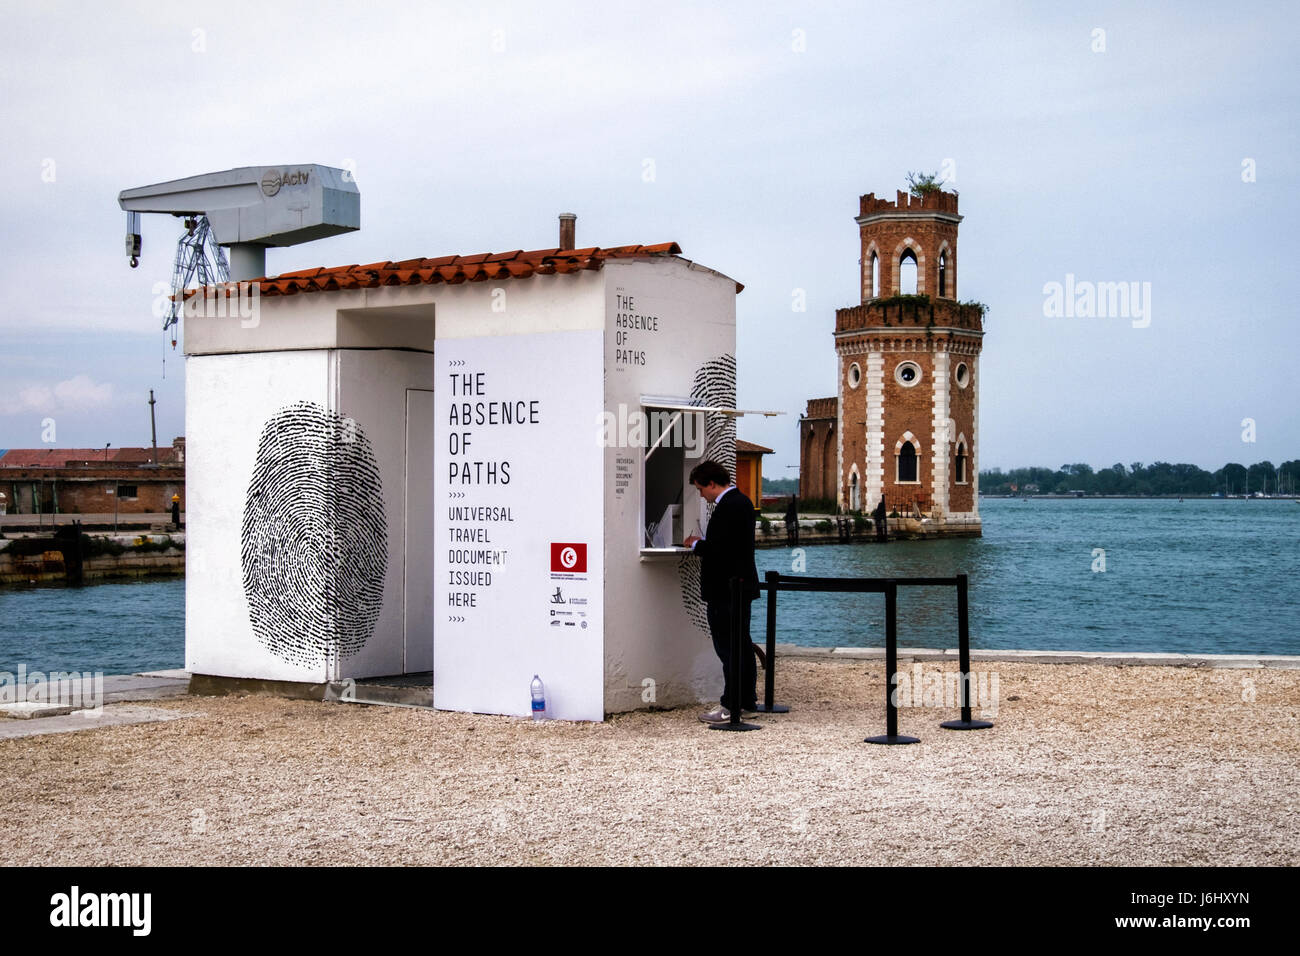 Castello,Venise,port de l'Arsenal. 57e Biennale 2017,La Biennale di Venezia.Pavillon tunisien,l'absence de chemins d'art d'installation, un stand de visa Banque D'Images